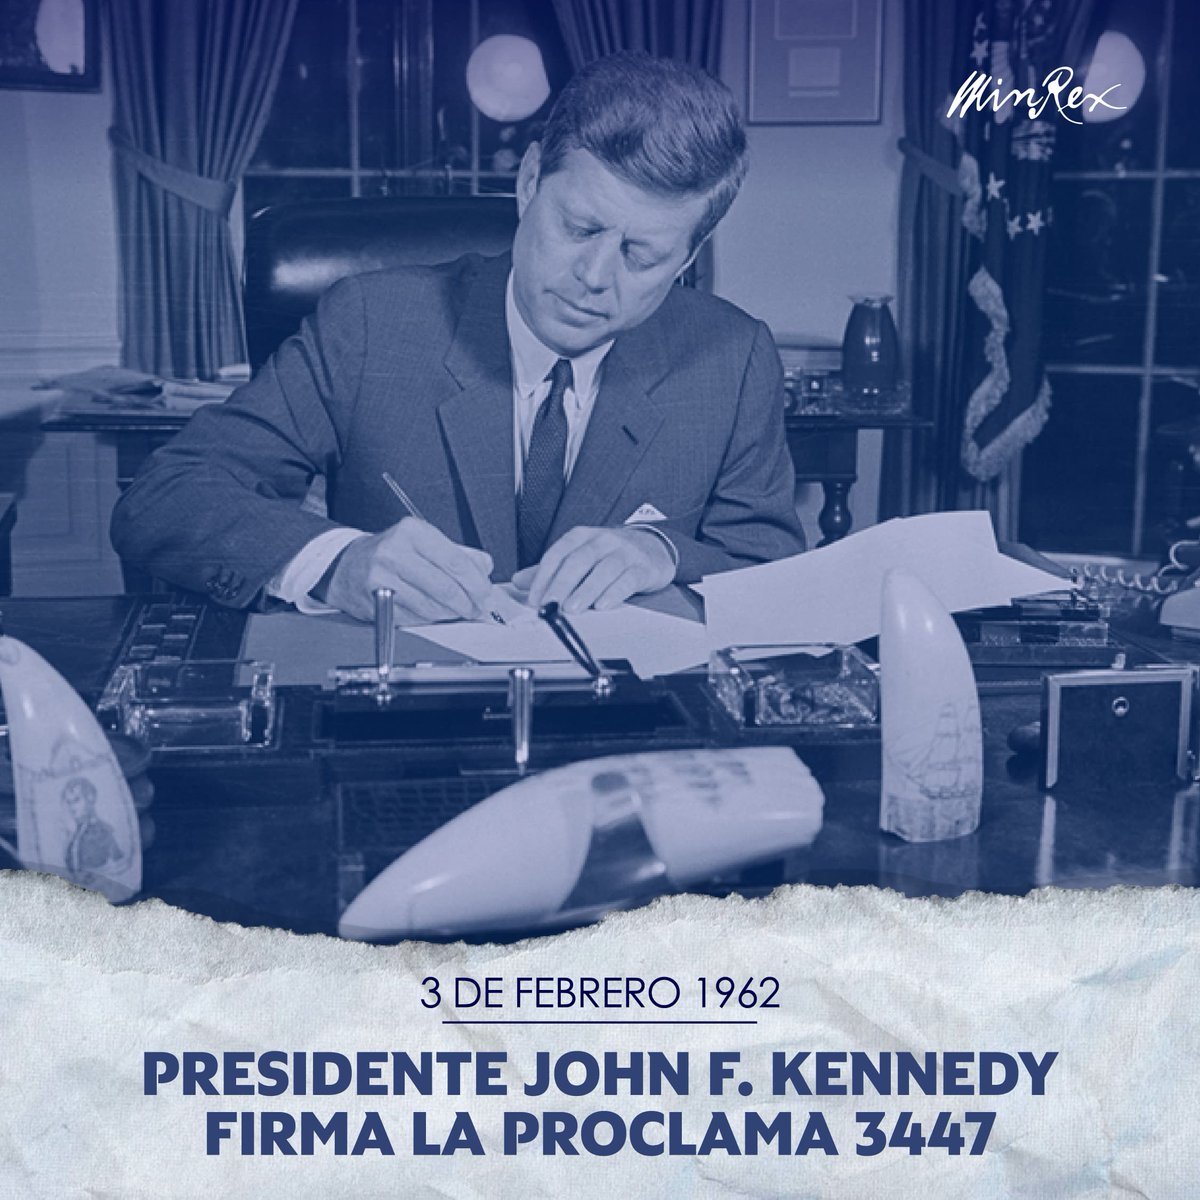 El presidente Kennedy, hace 62 años, legalizó el bloqueo contra #Cuba 🇨🇺 con el que pensaba erróneamente quebrar la resistencia de la Revolución. El pueblo cubano, con inigualable dignidad, seguirá luchando contra esa criminal política, y seguirá venciendo. #MejorSinBloqueo